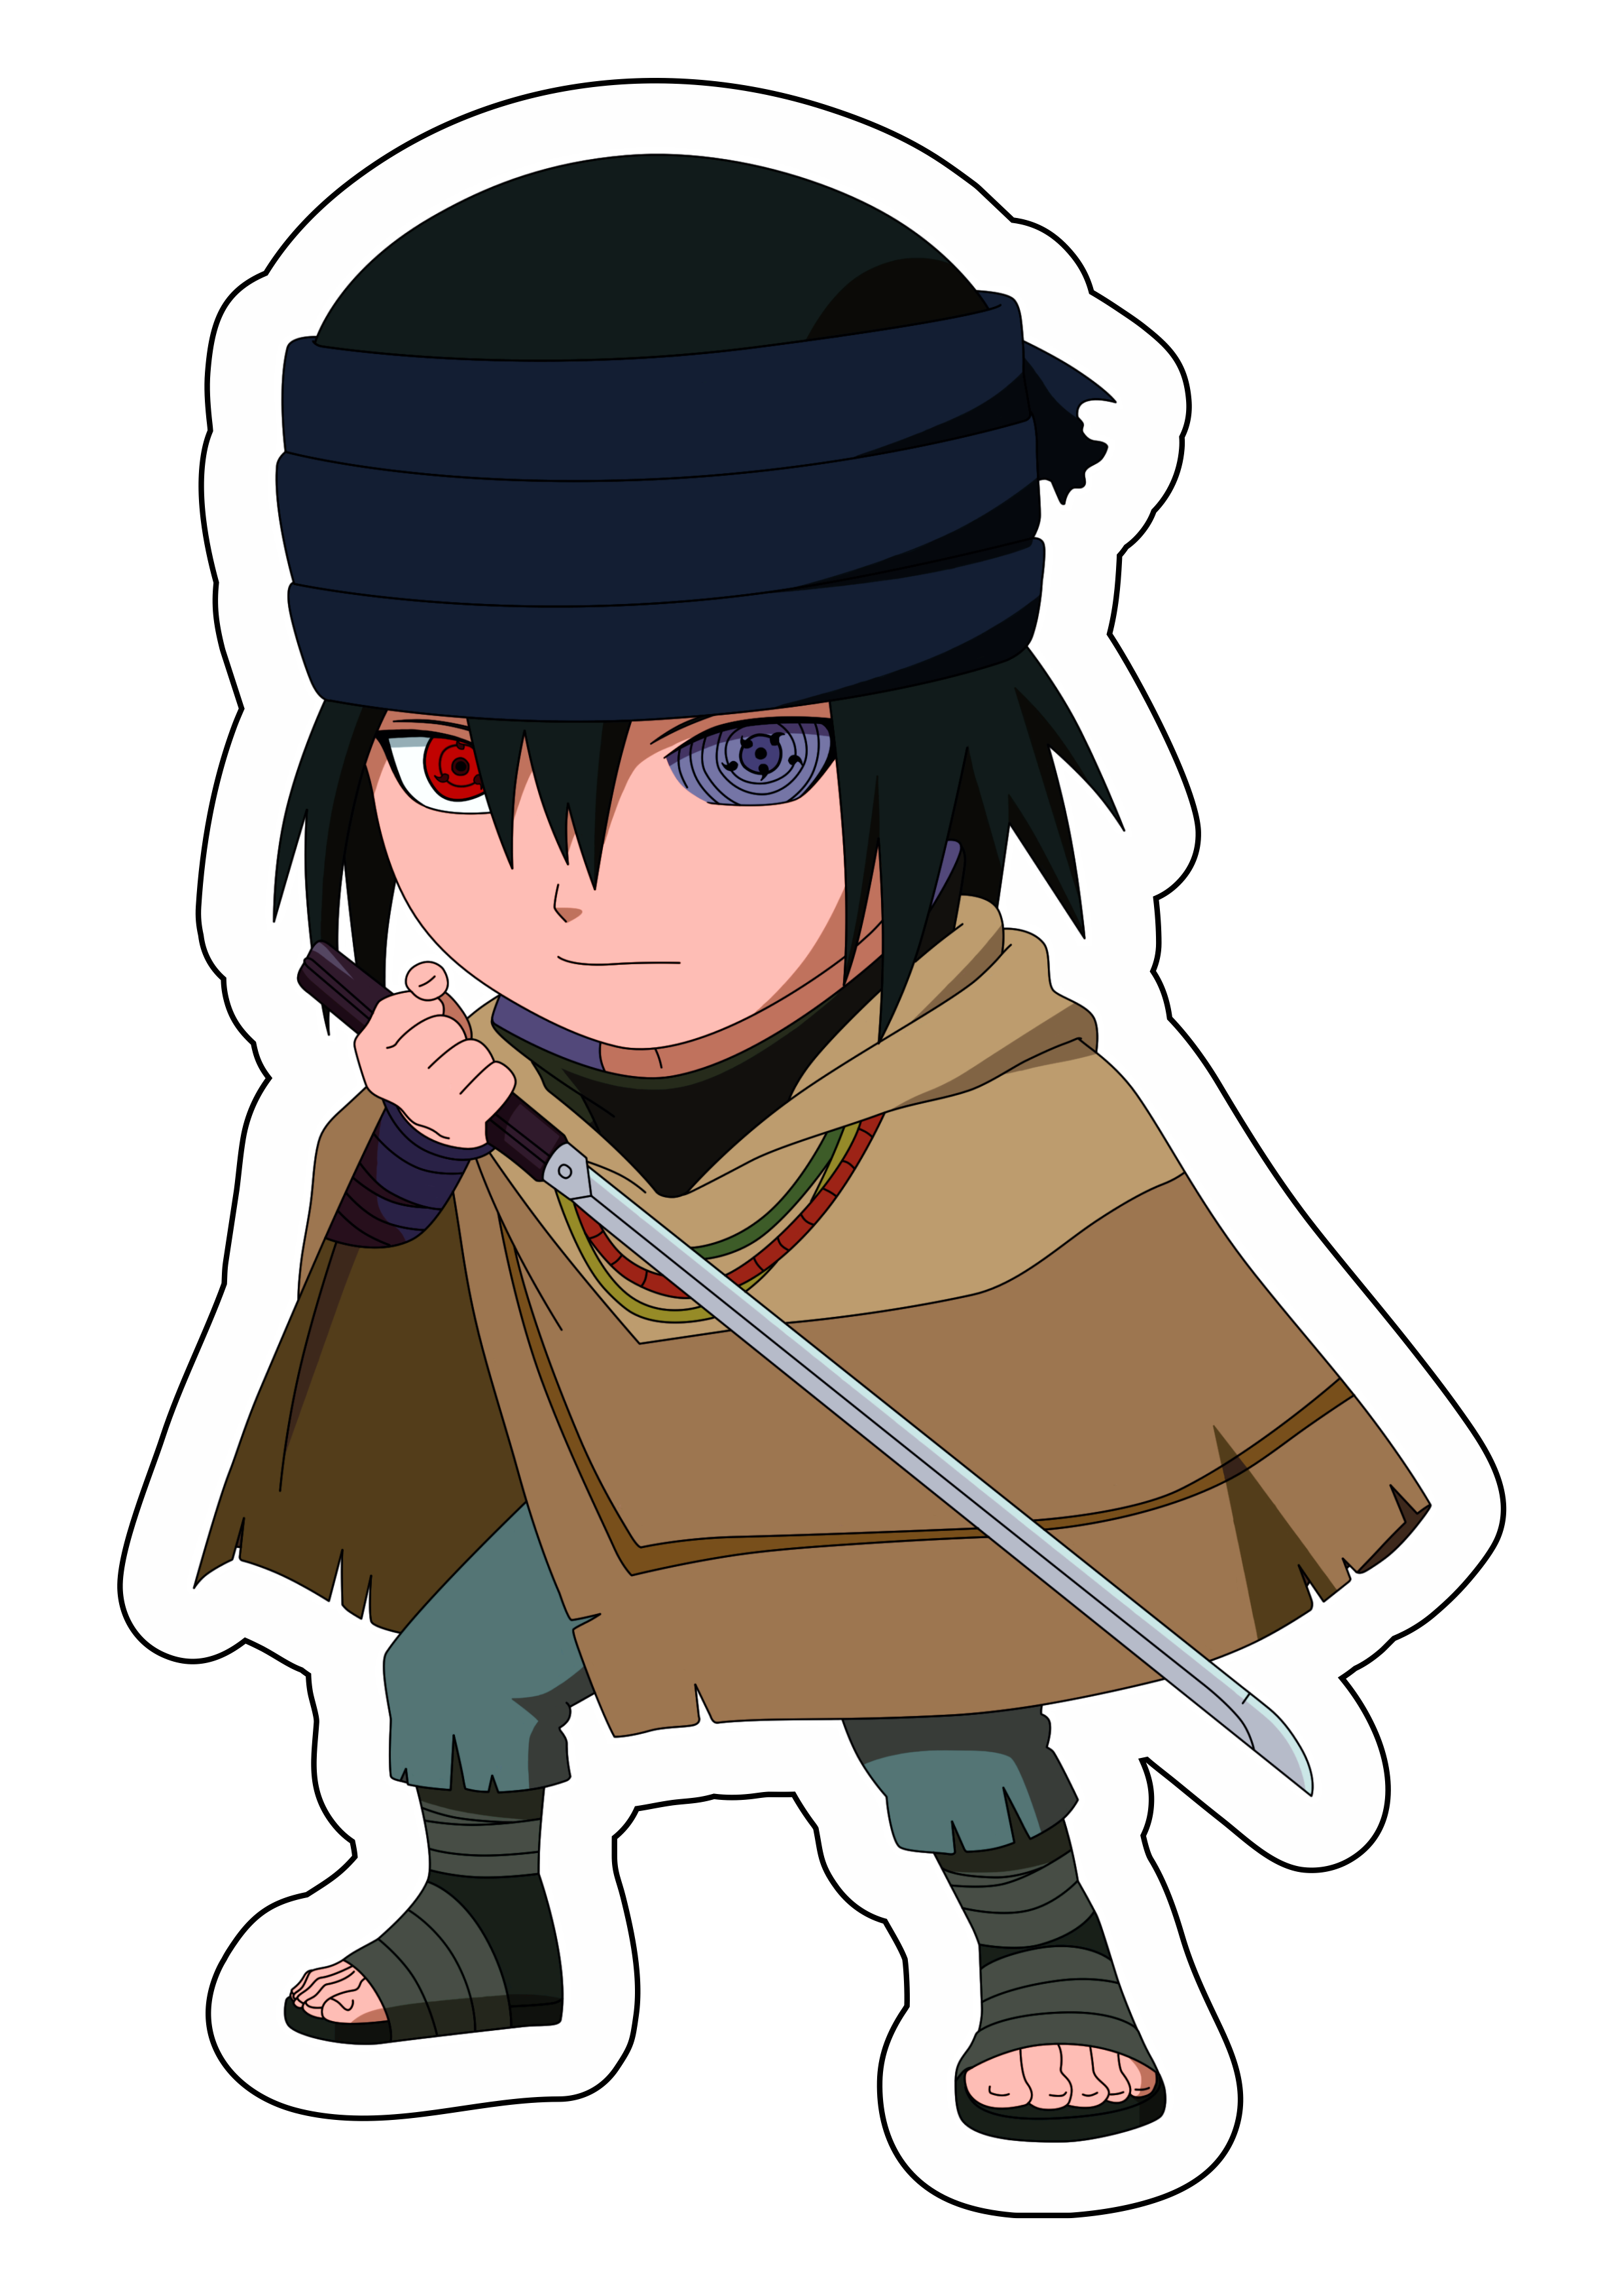 Naruto Boruto cute chibi Sasuke com espada Sharingam ninja vila oculta da folha desenho infantil anime ilustração ilustrador png